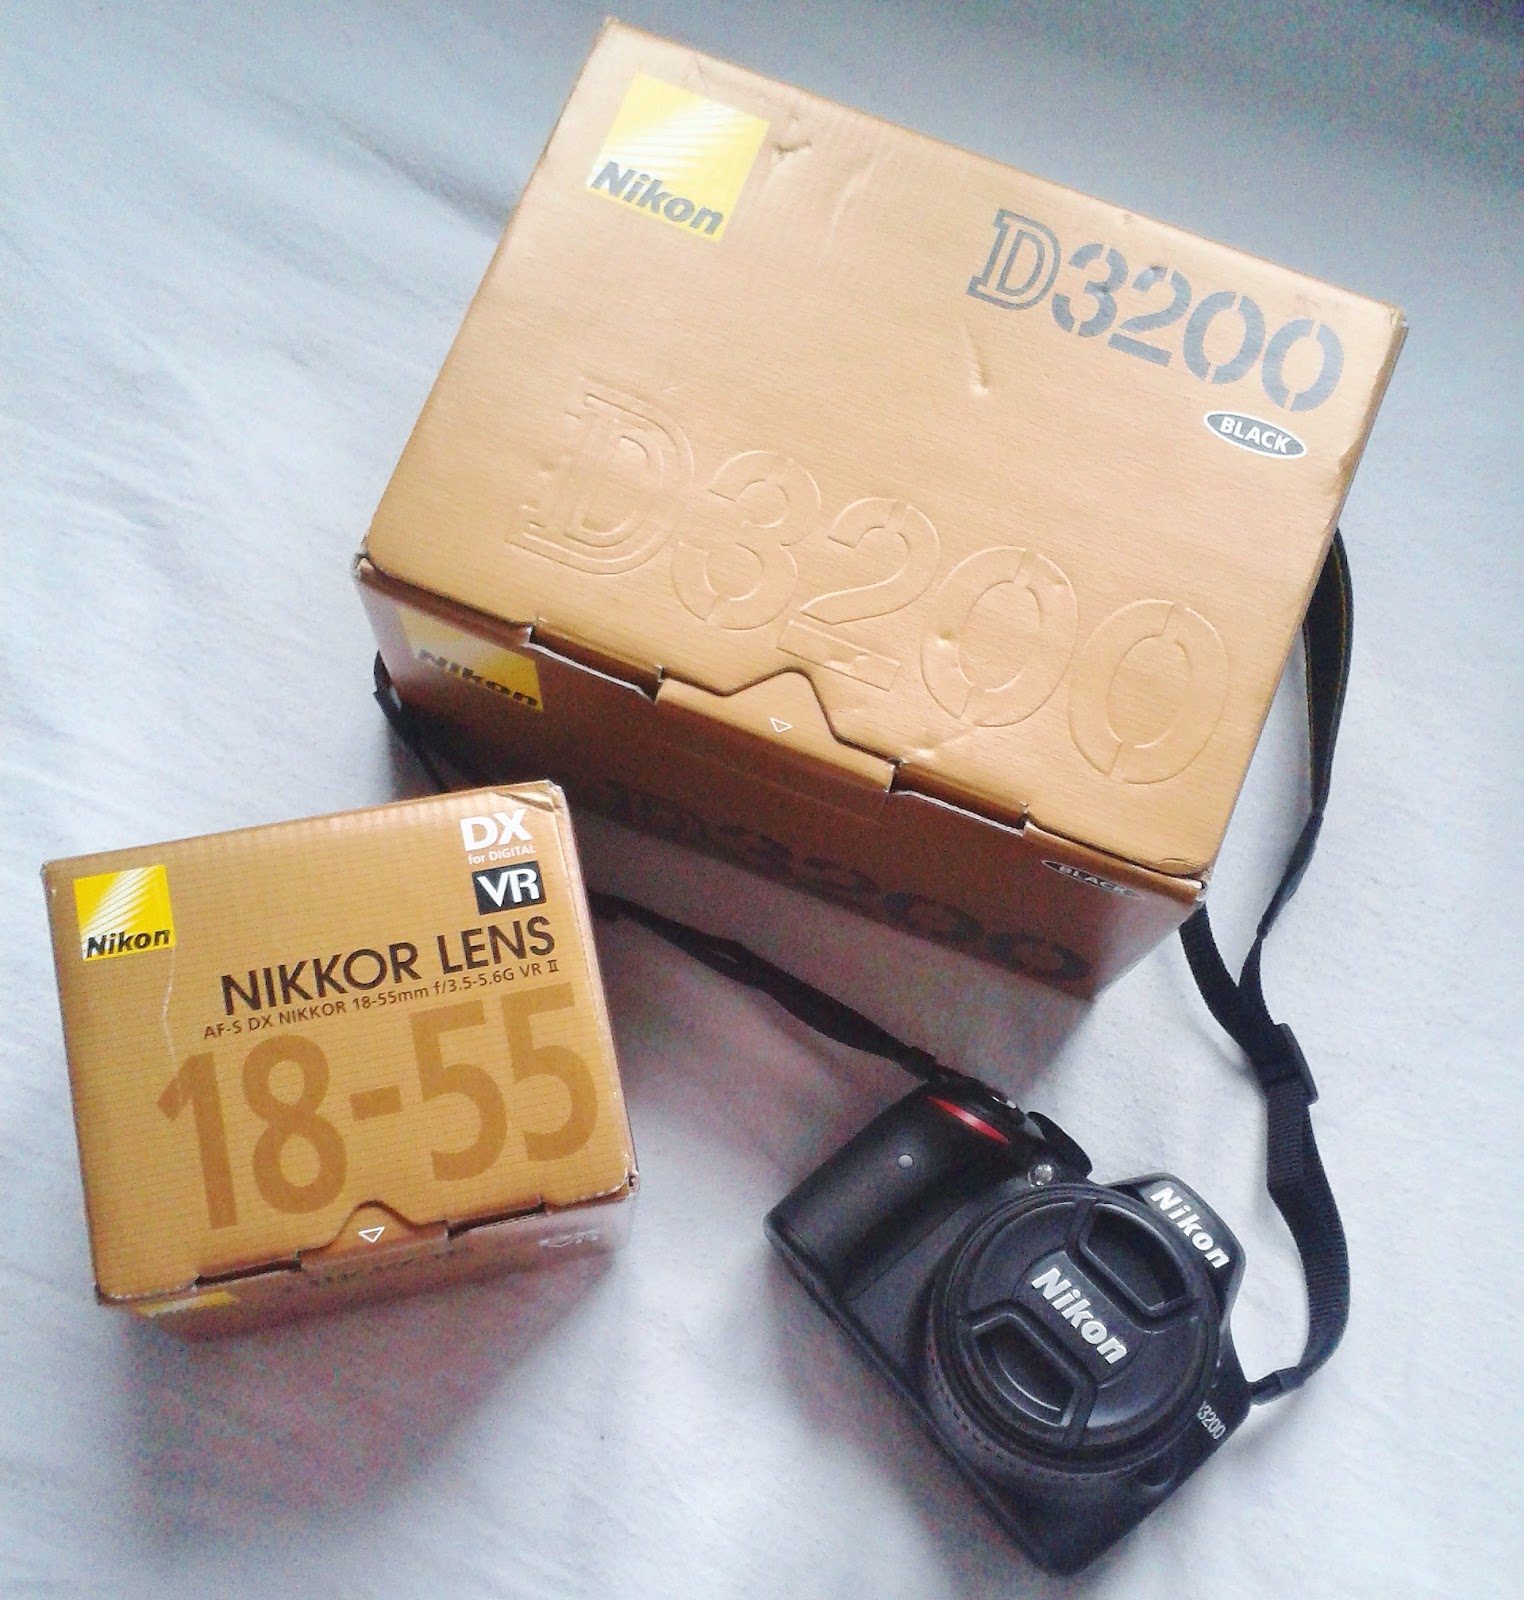 Nikon DSLR